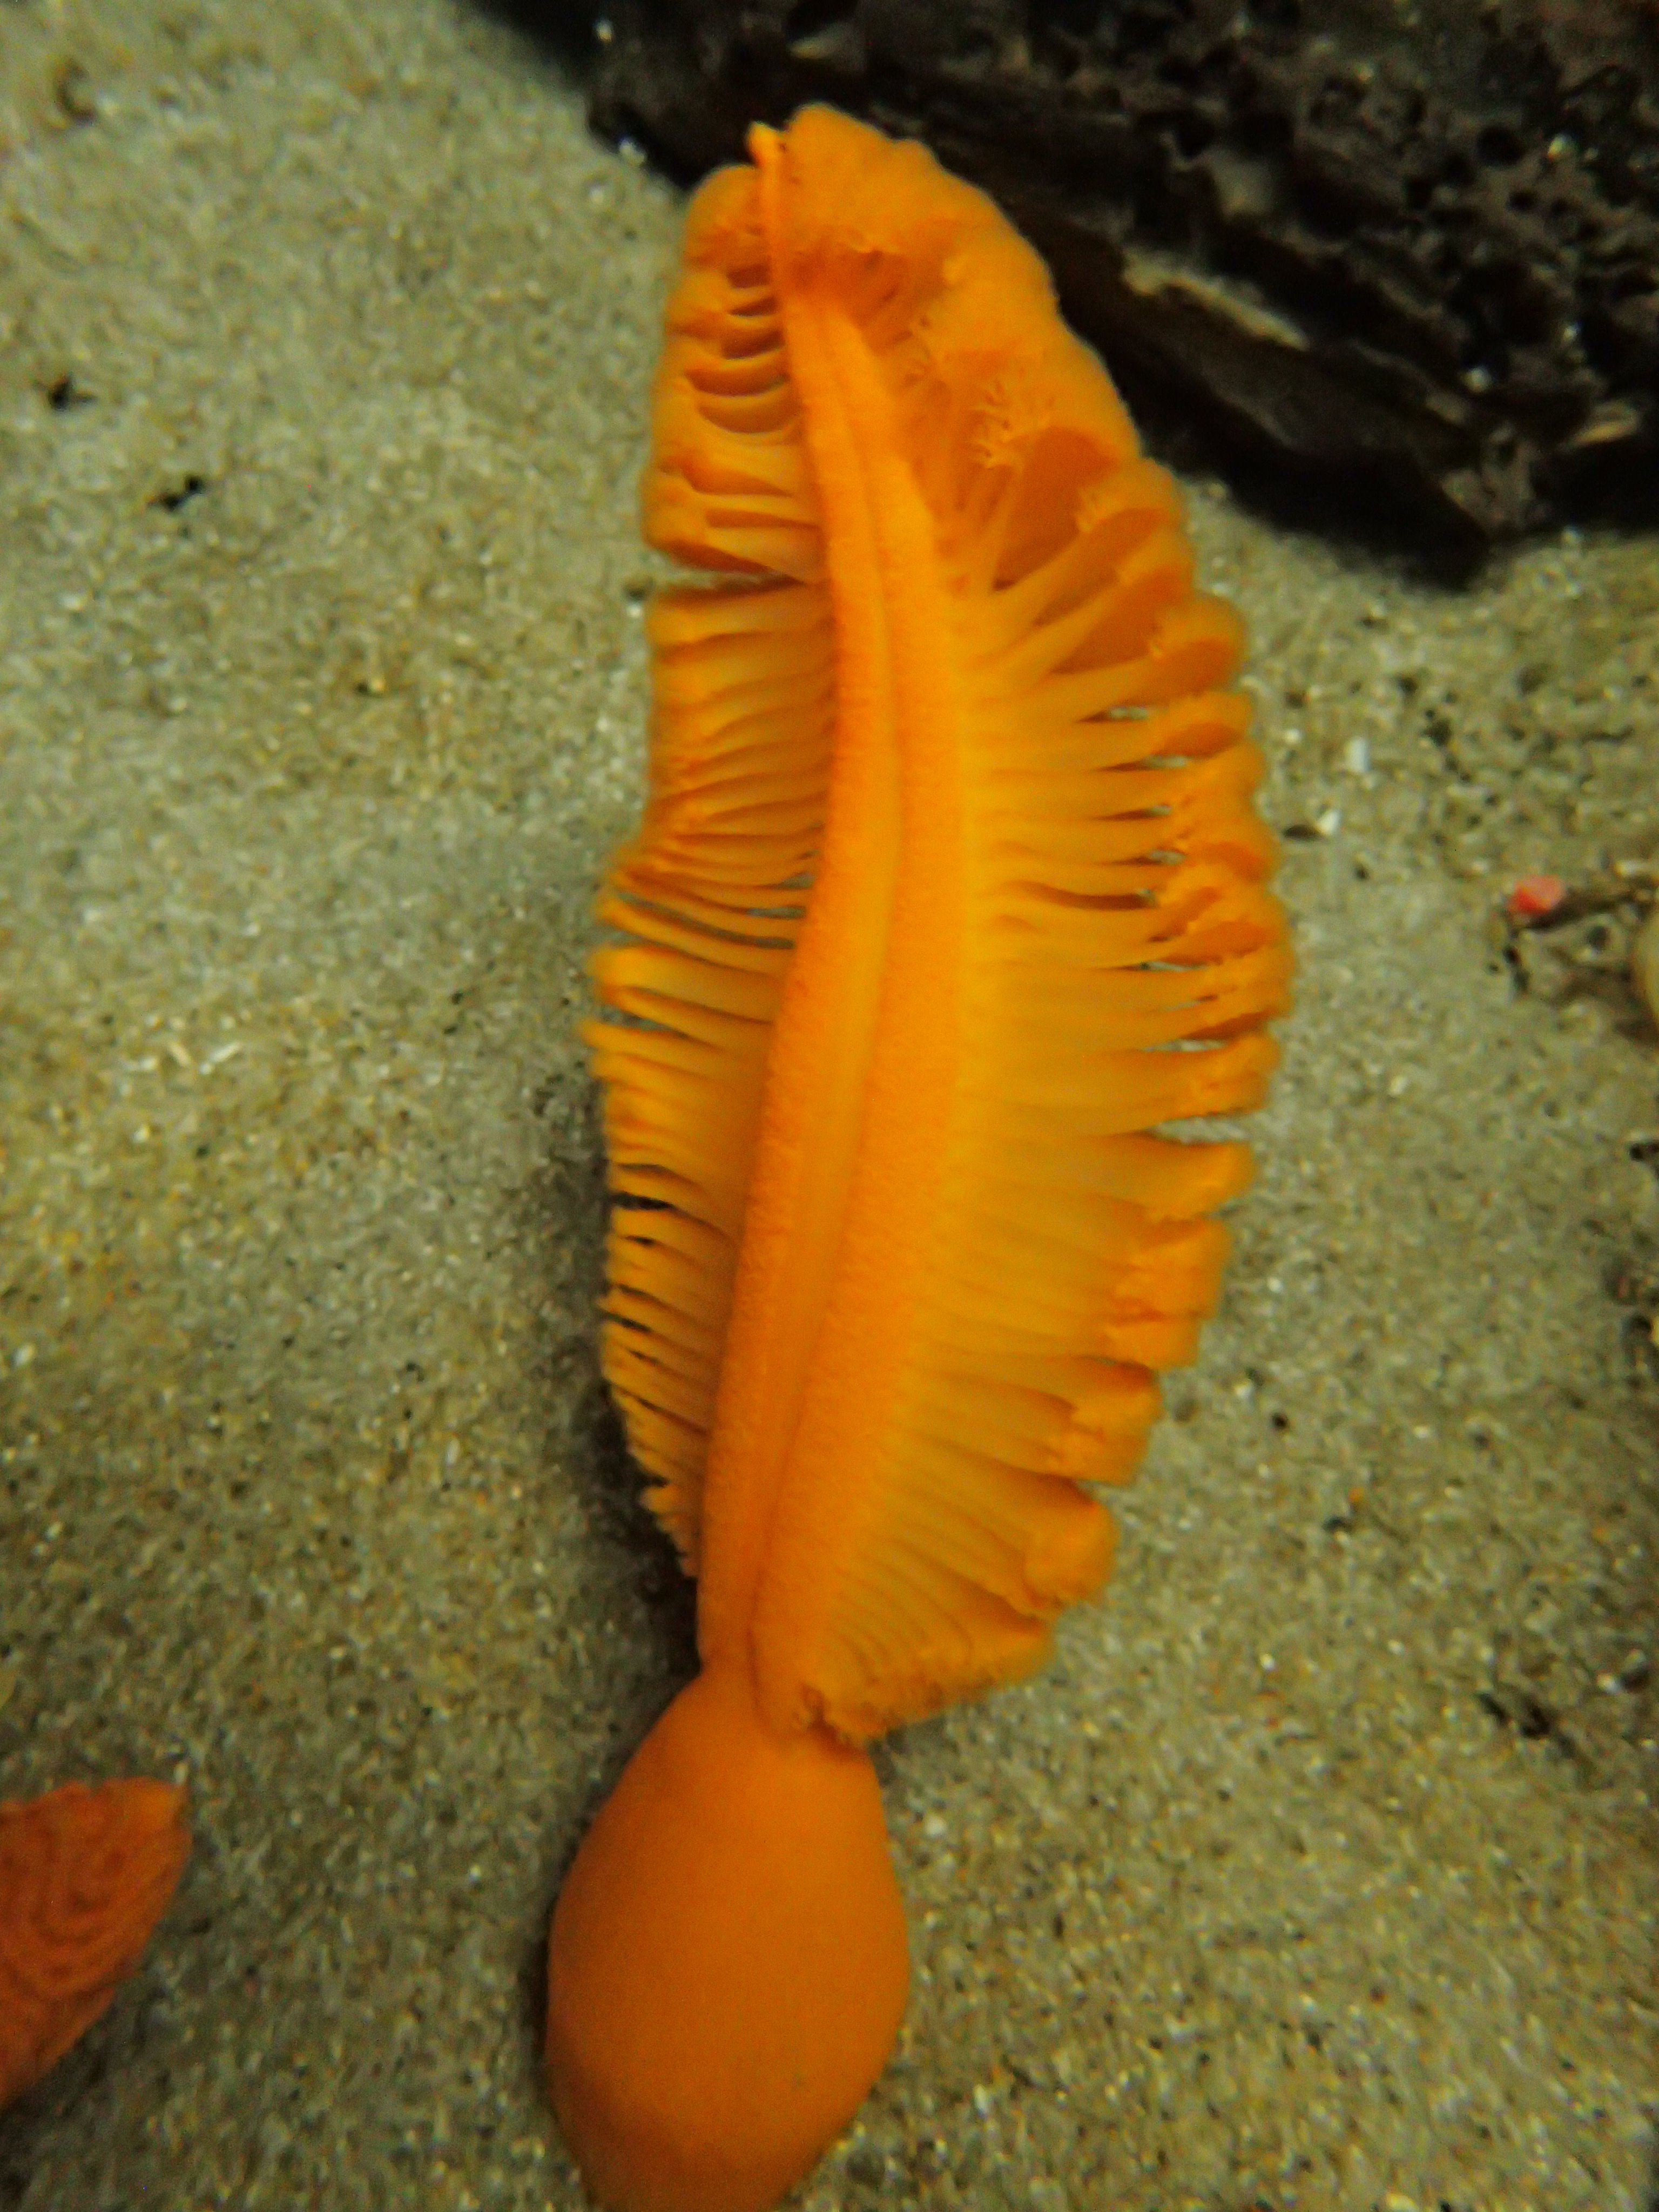 葛西臨海水族園 公式 カリフォルニア沿岸 水槽では魚の えら のような姿をしたオレンジシーペン を展示しています ウミエラはイソギンチャクなどの仲間で 羽ペンにも見えることから英語で Sea Pen と呼ばれています えら のような身体を流れ